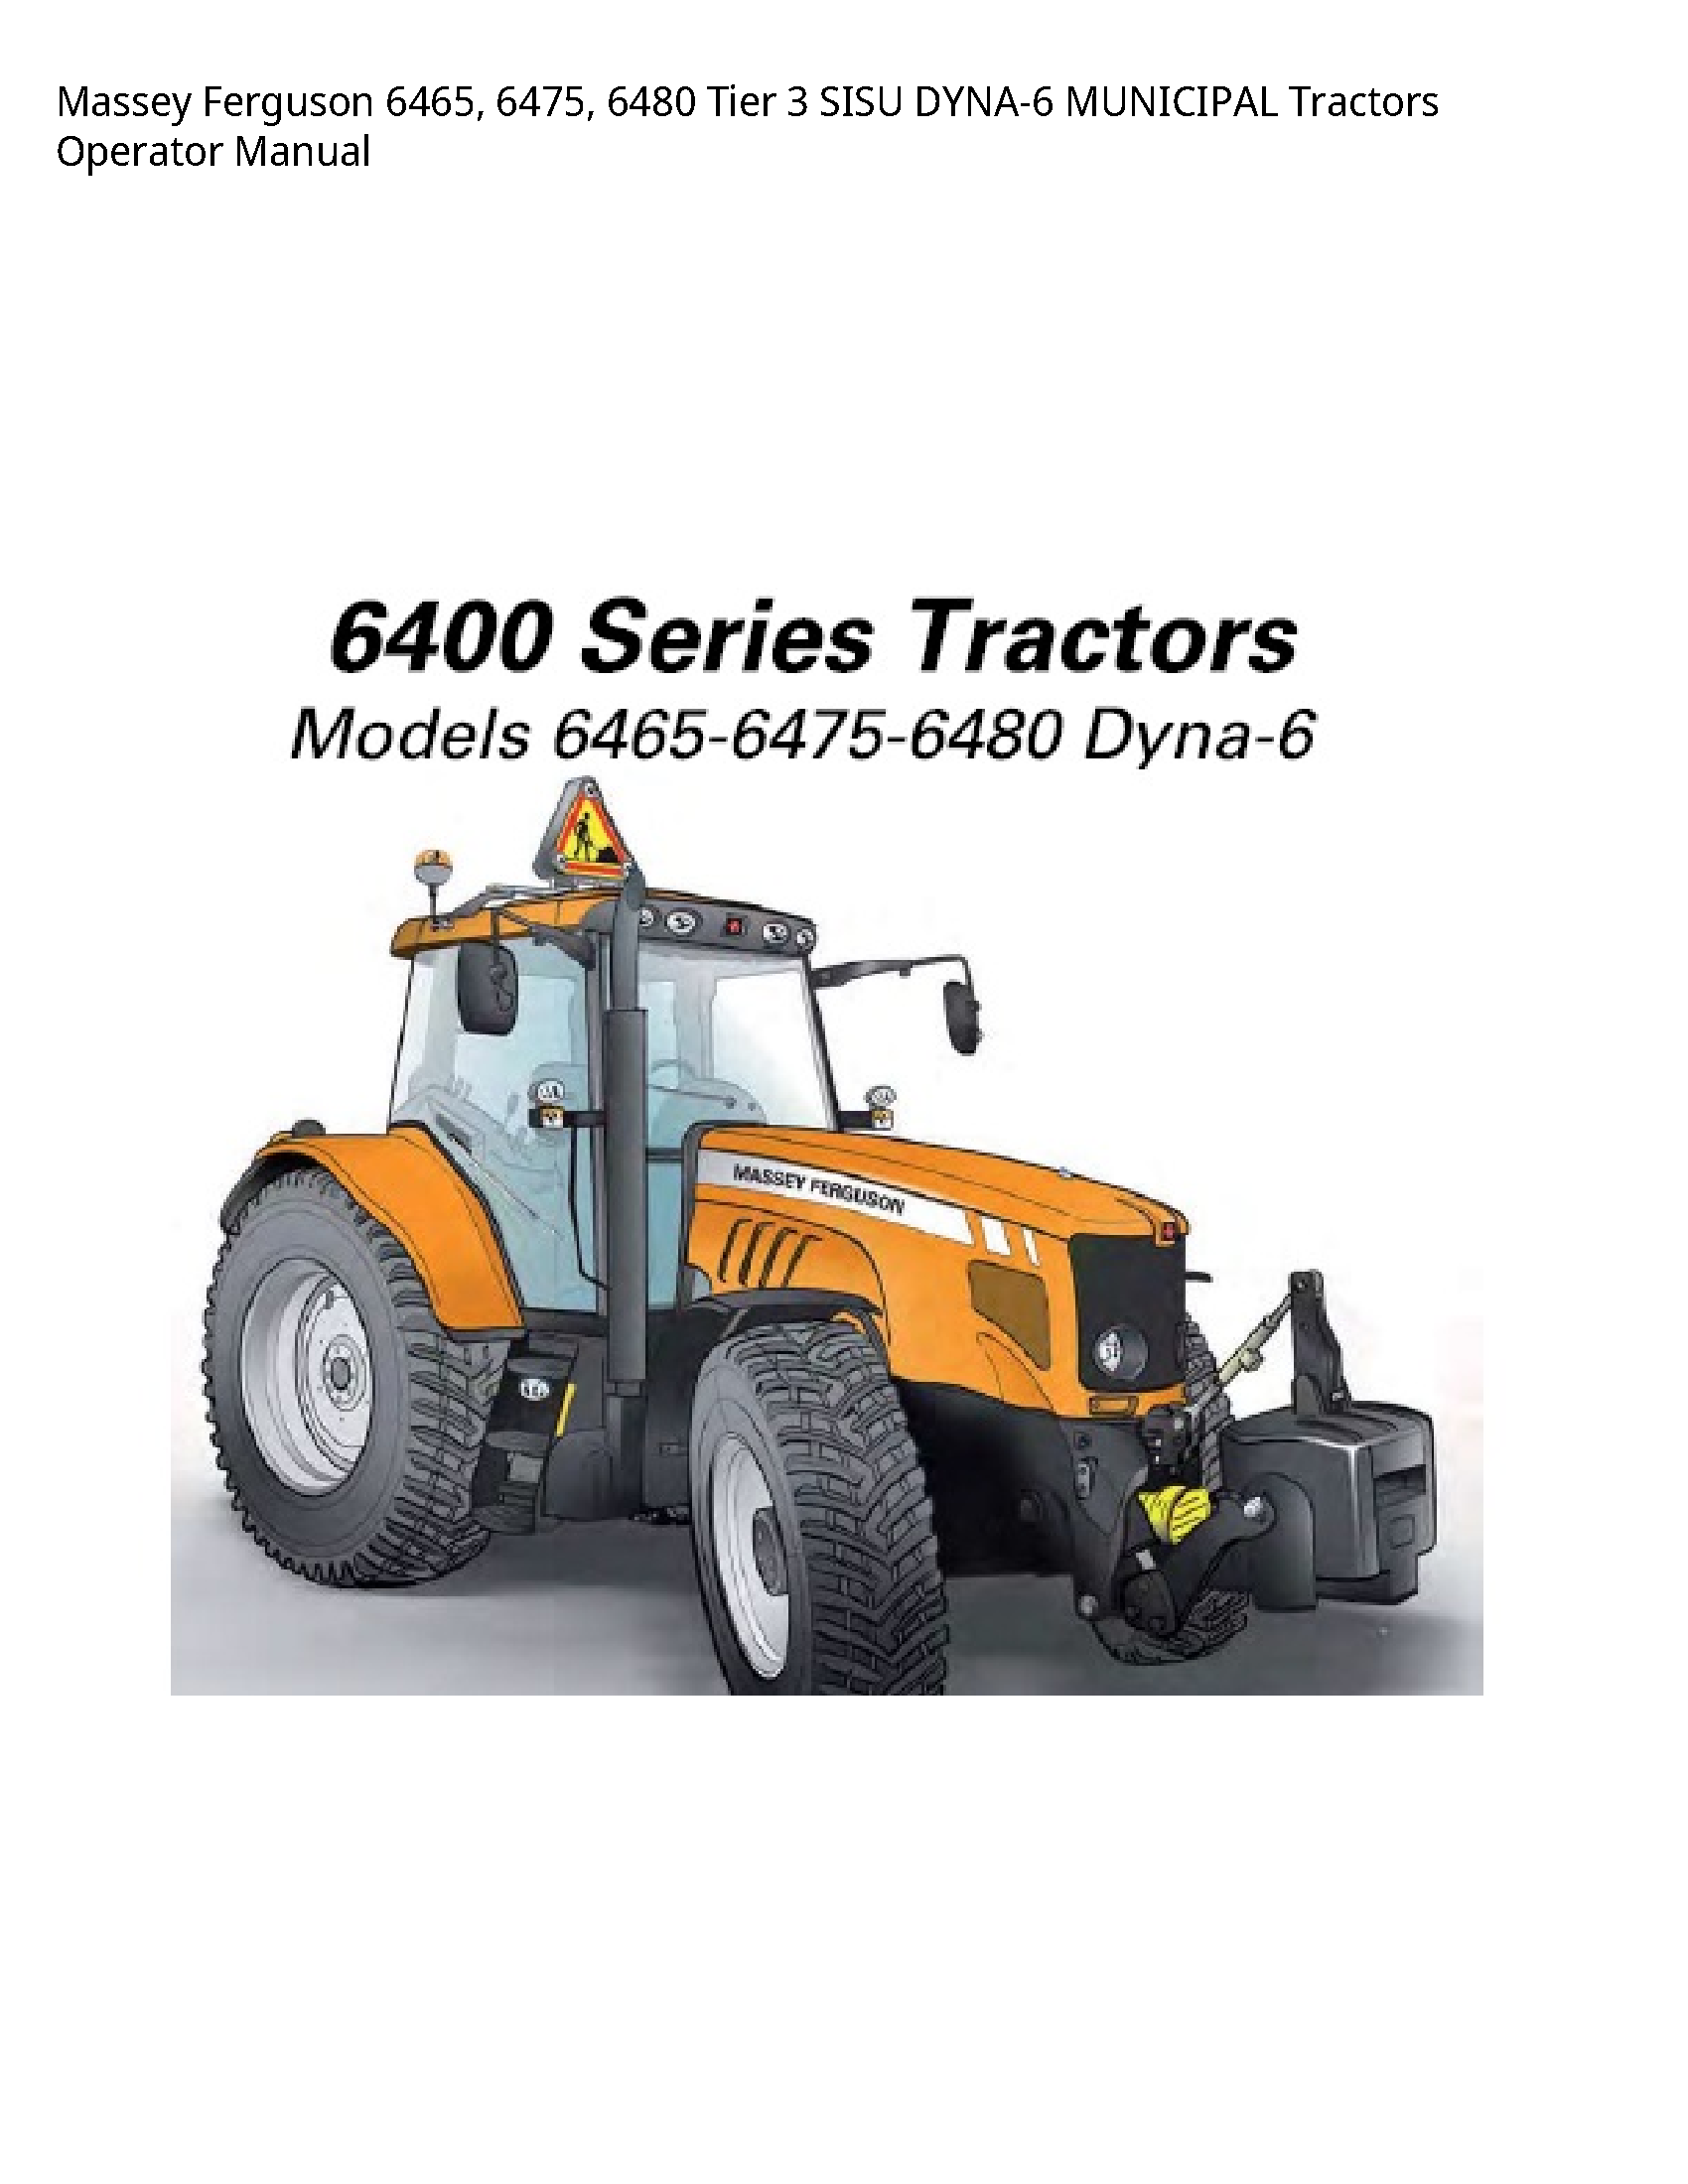 Massey Ferguson 6465 Tier SISU MUNICIPAL Tractors Operator manual